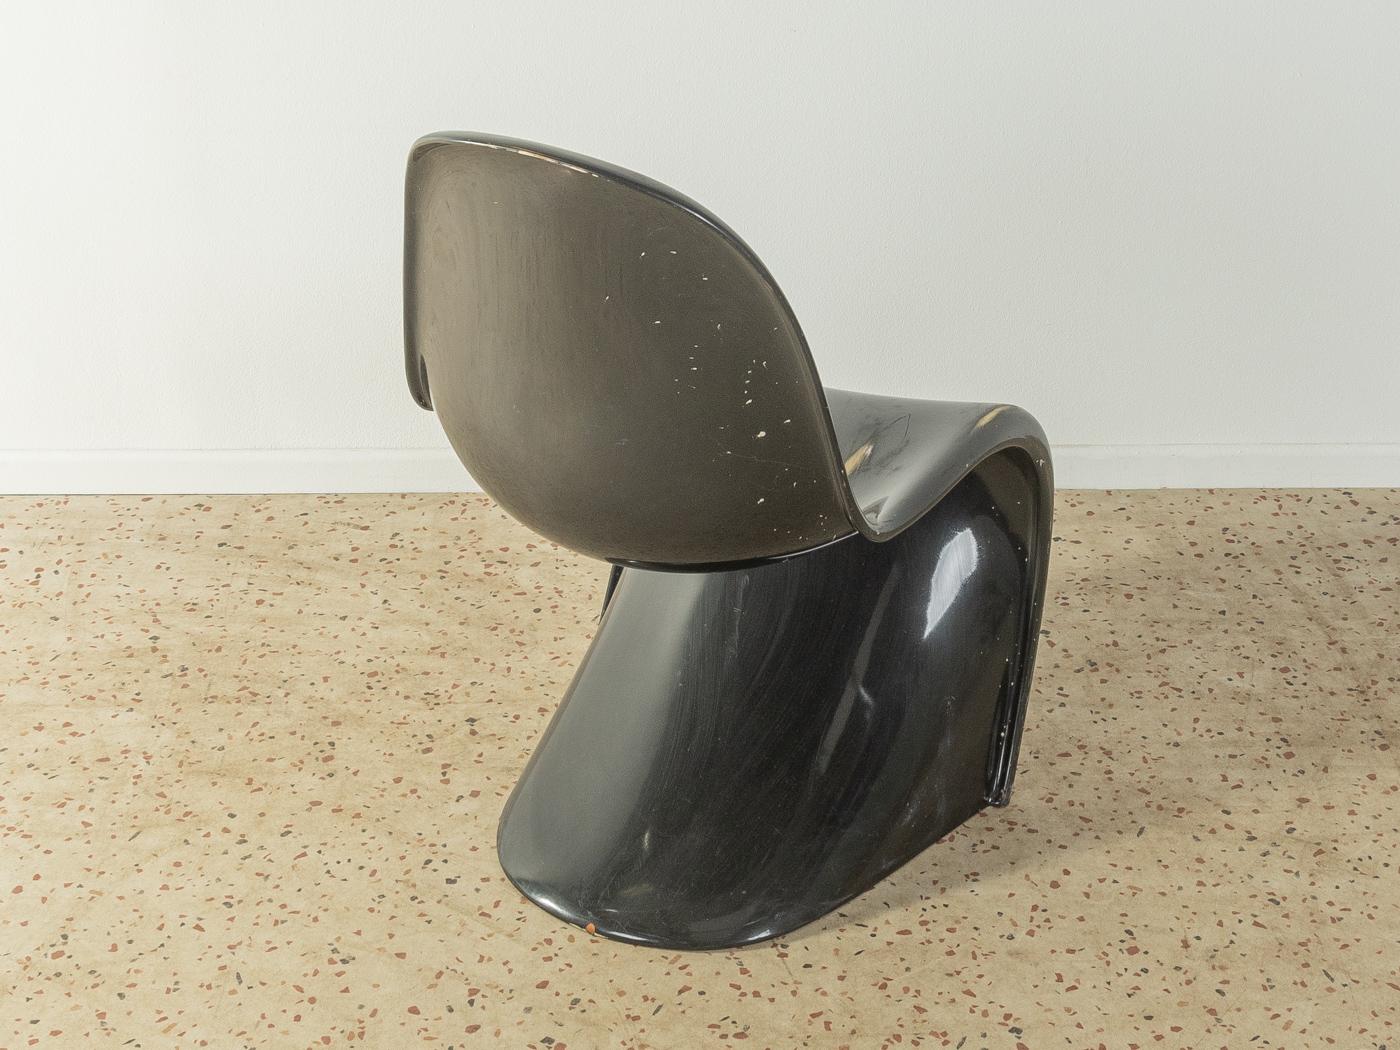 Zeitloser Freischwinger Panton Chair der zweiten Generation (1968-71), entworfen von Verner Panton im Jahr 1959. Hochwertiger Korpus in schwarz aus Polyurethan-Hartschaum. Einzigartiger, fast unberührter Zustand.

Qualitätsmerkmale:
    vollendetes